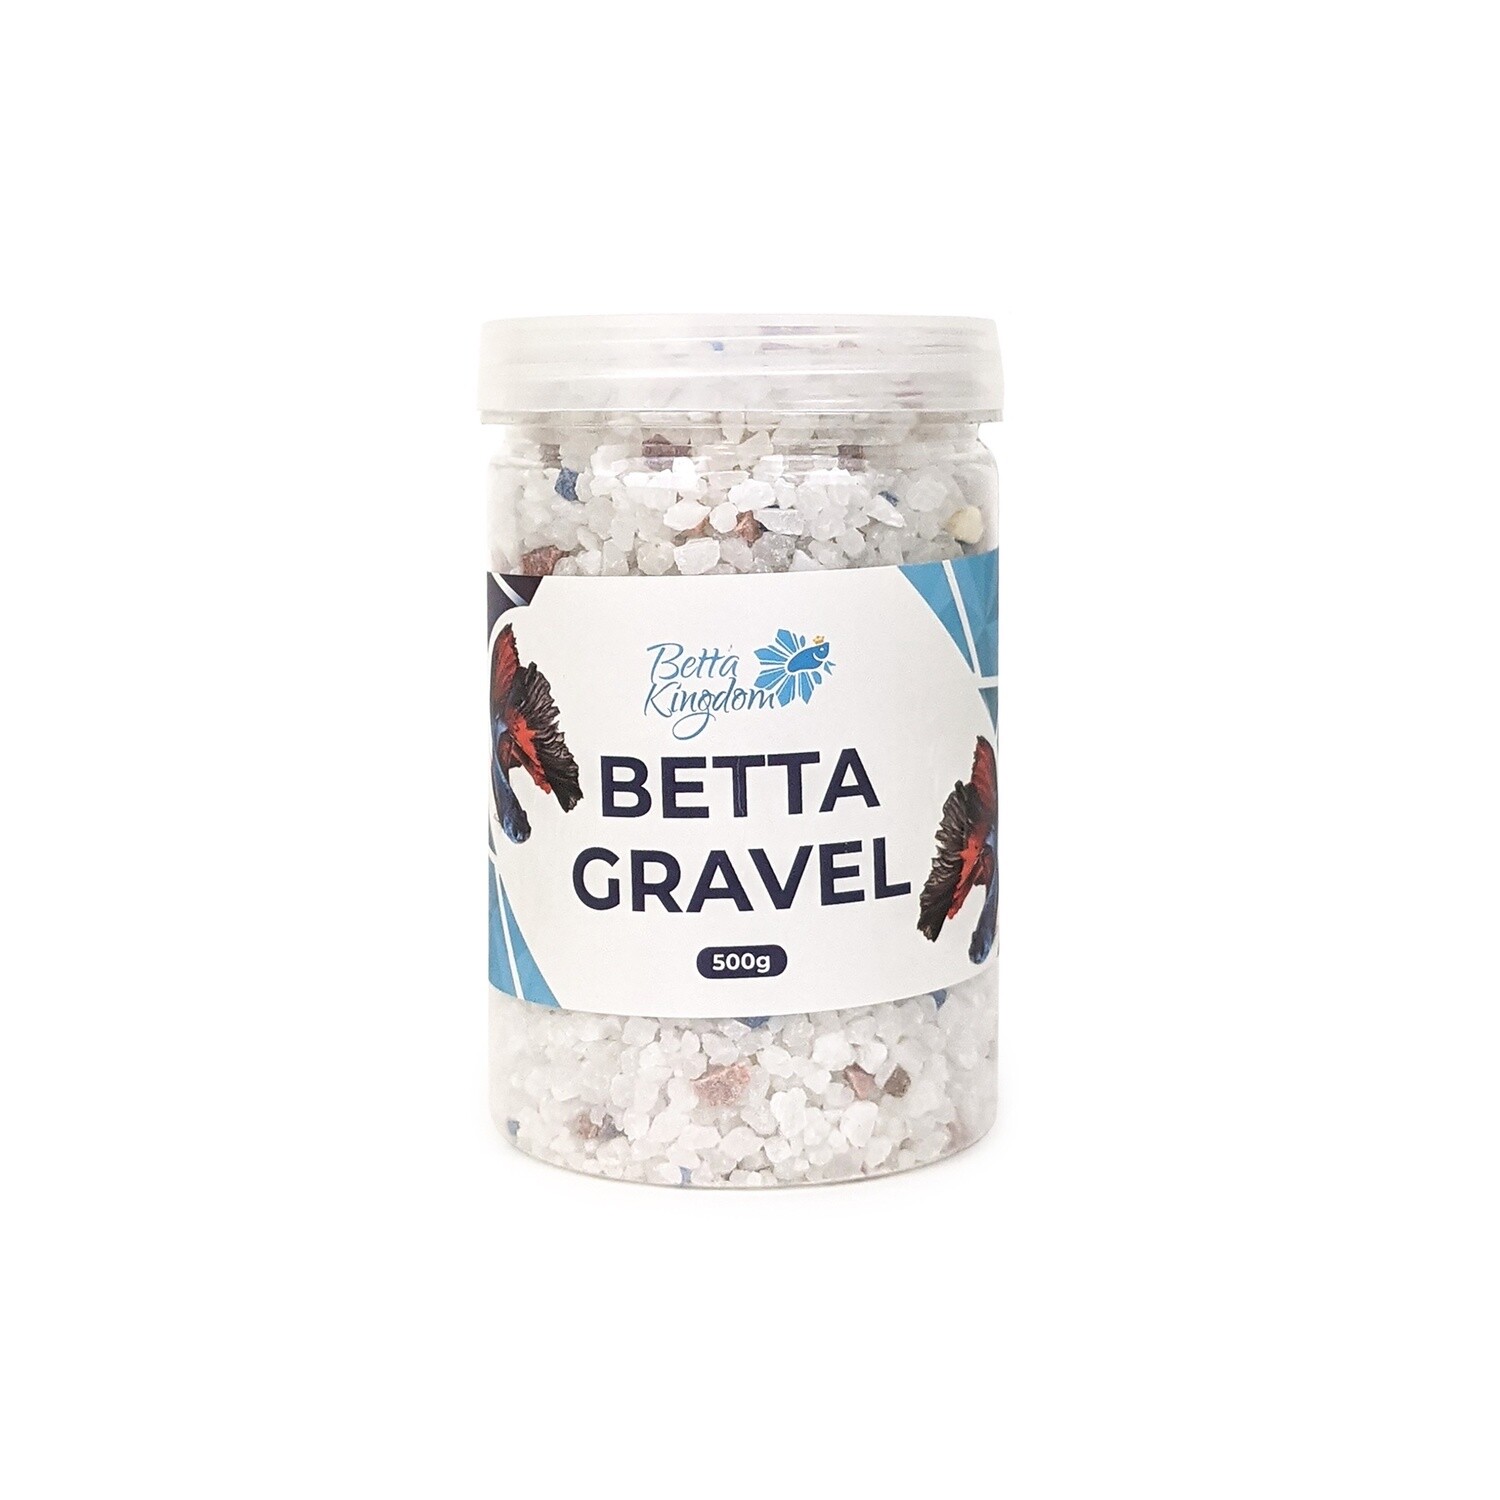 Betta Kingdom Gravel 500g, Colour: Natural White